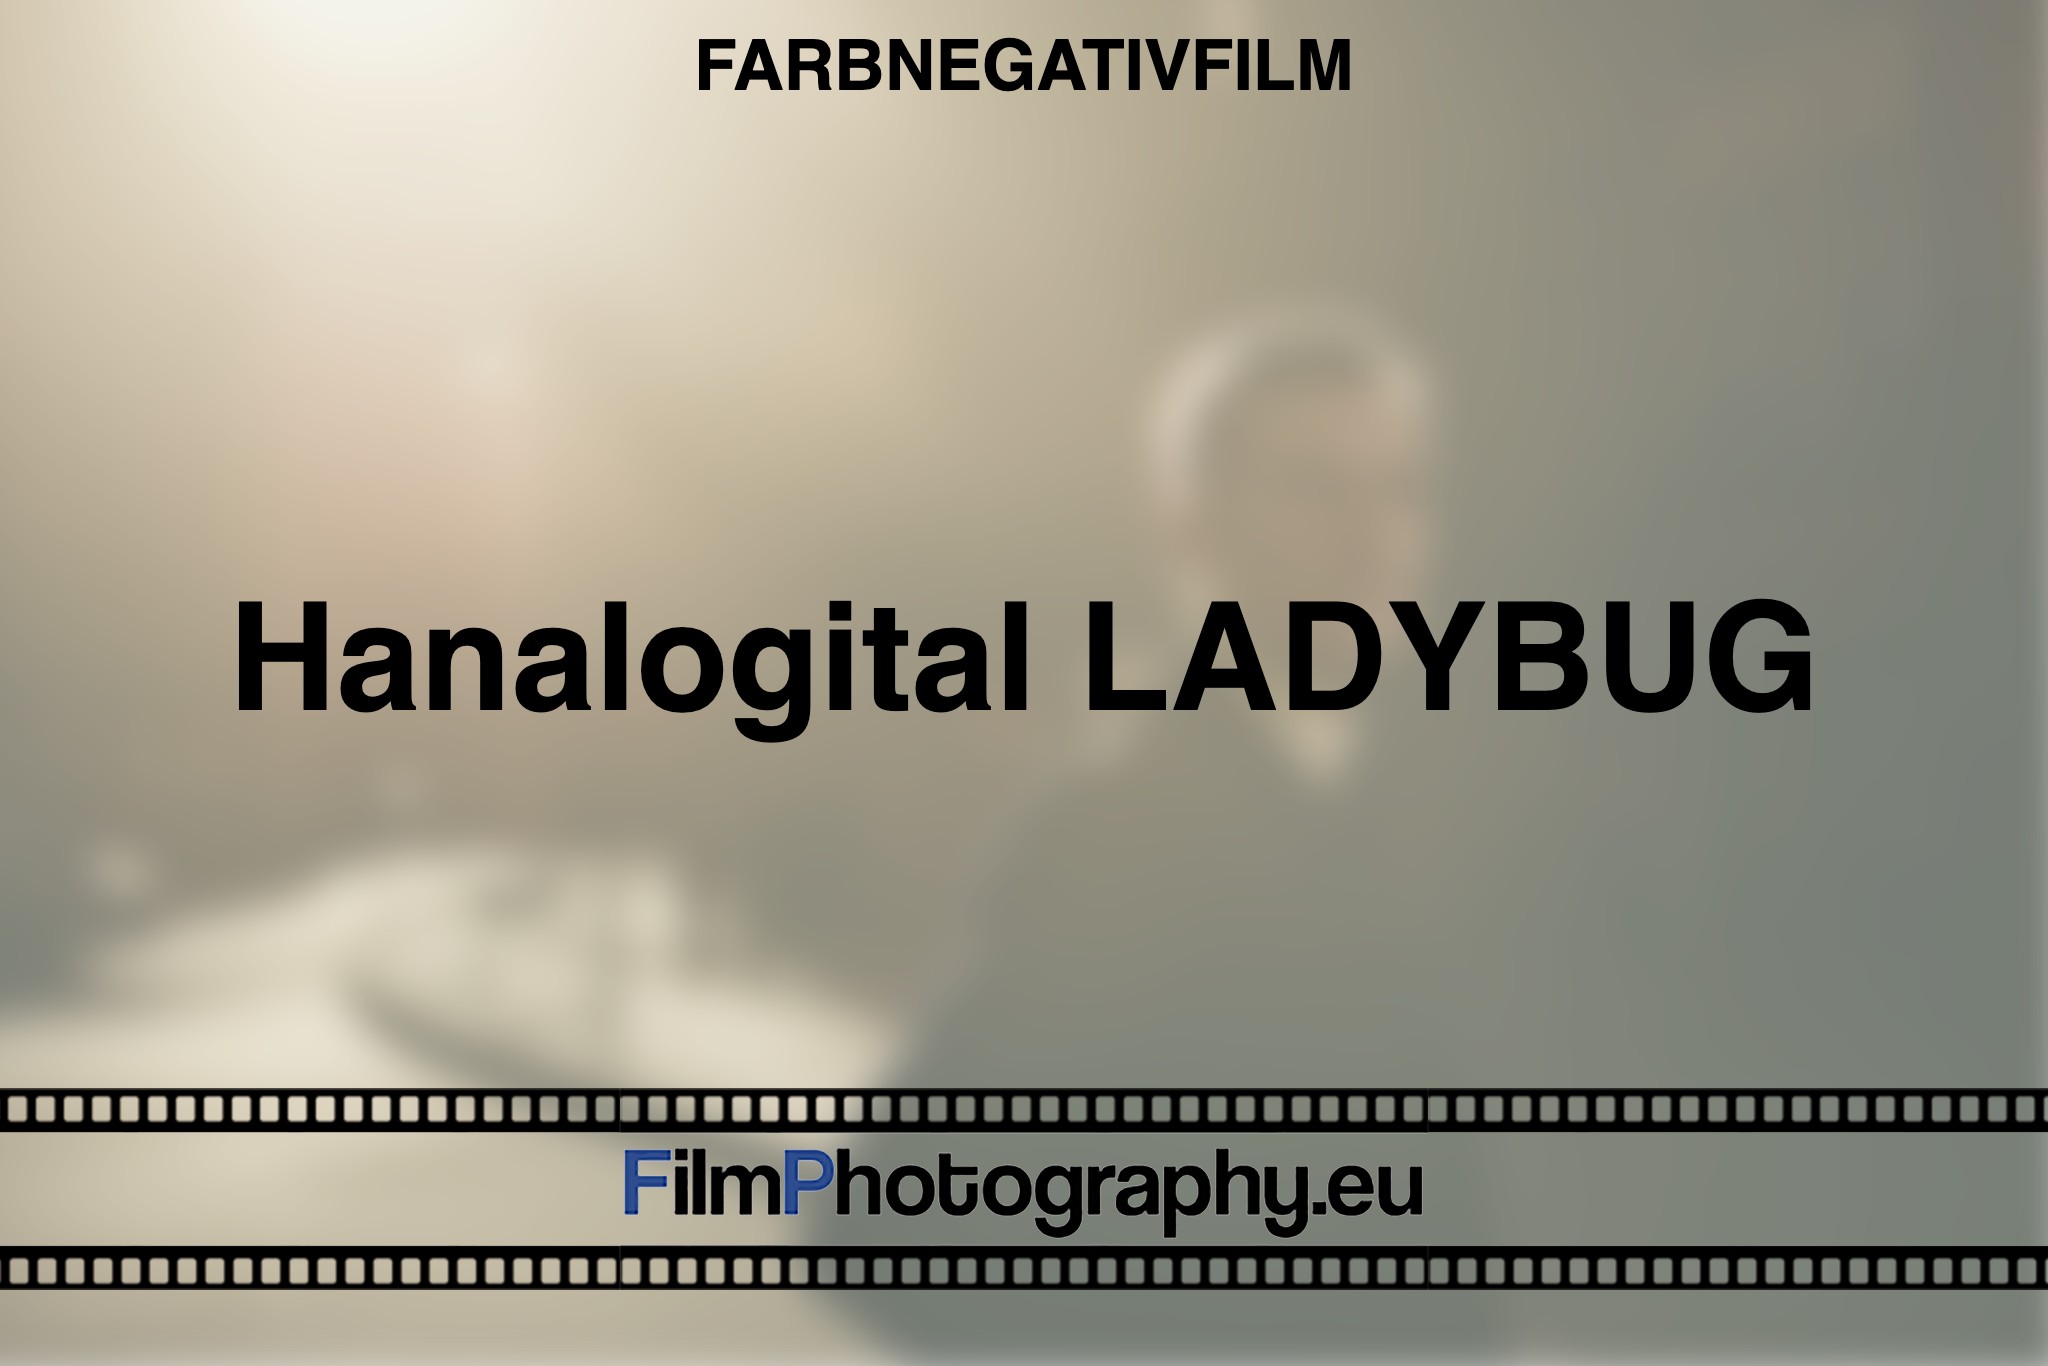 hanalogital-ladybug-farbnegativfilm-bnv